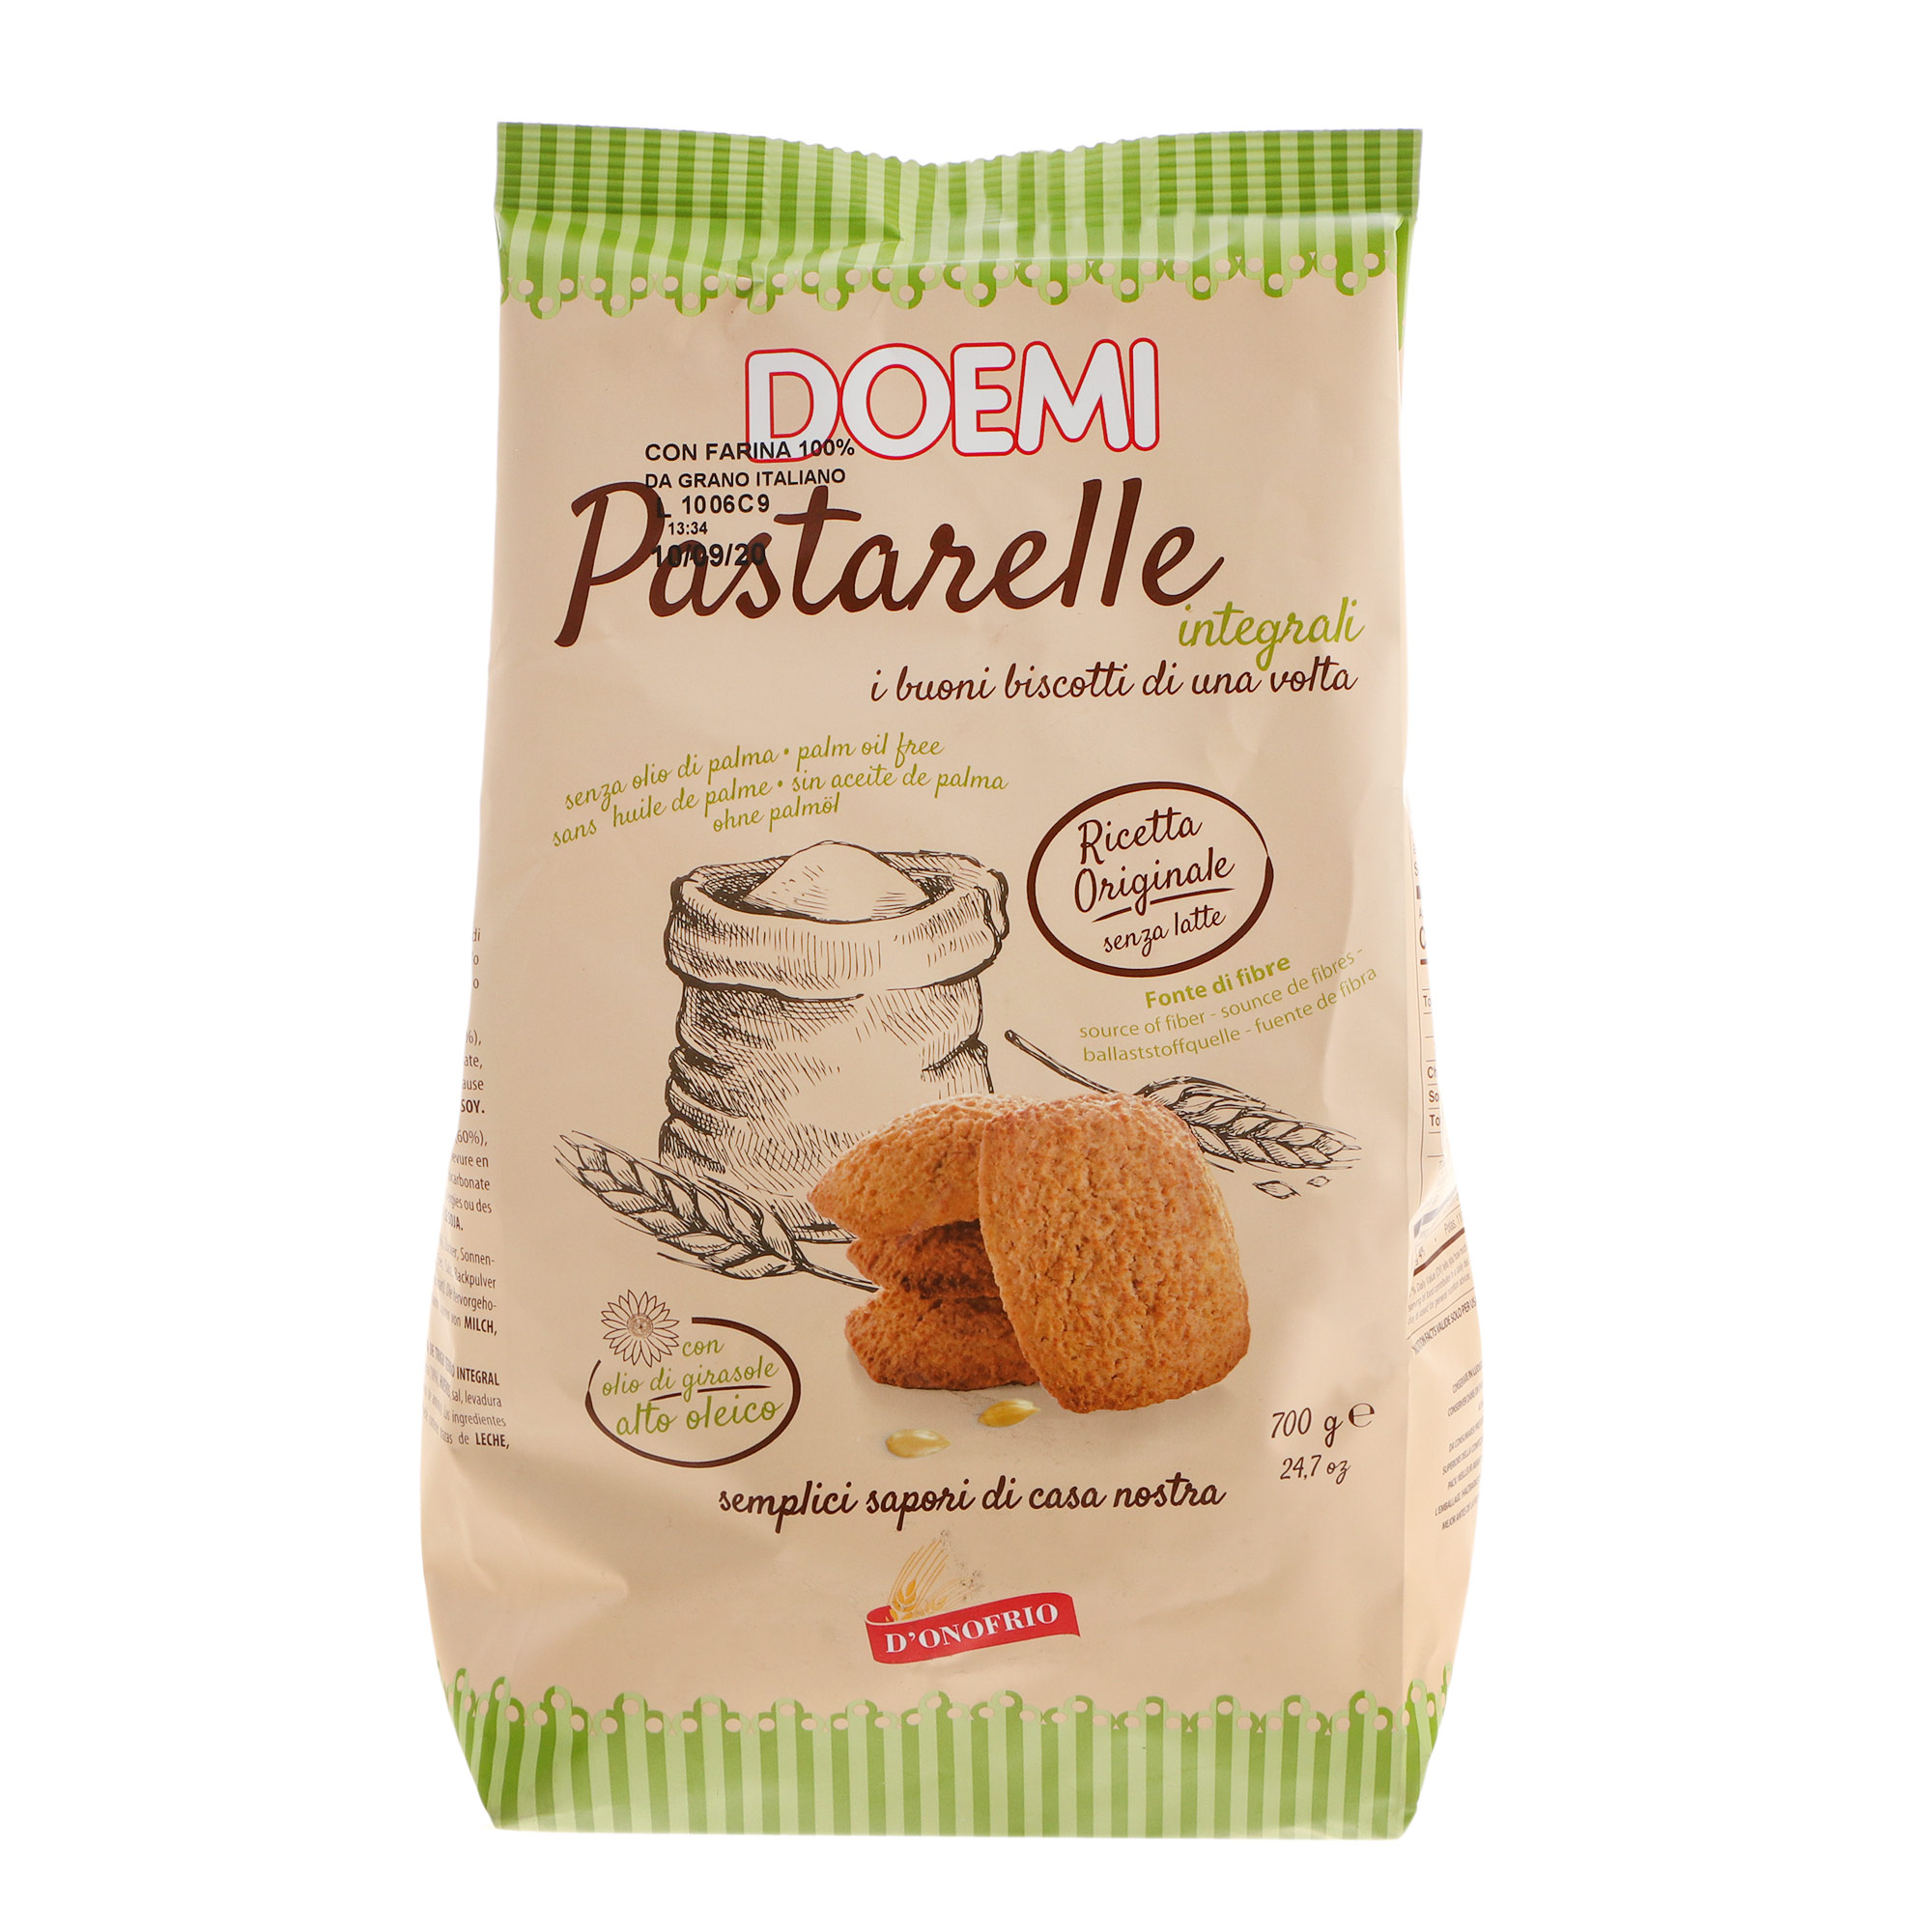 Печенье цельнозерновое DOEMI Pastarelli 700 г печенье wellness цельнозерновое с шоколадом и витаминами 210 г